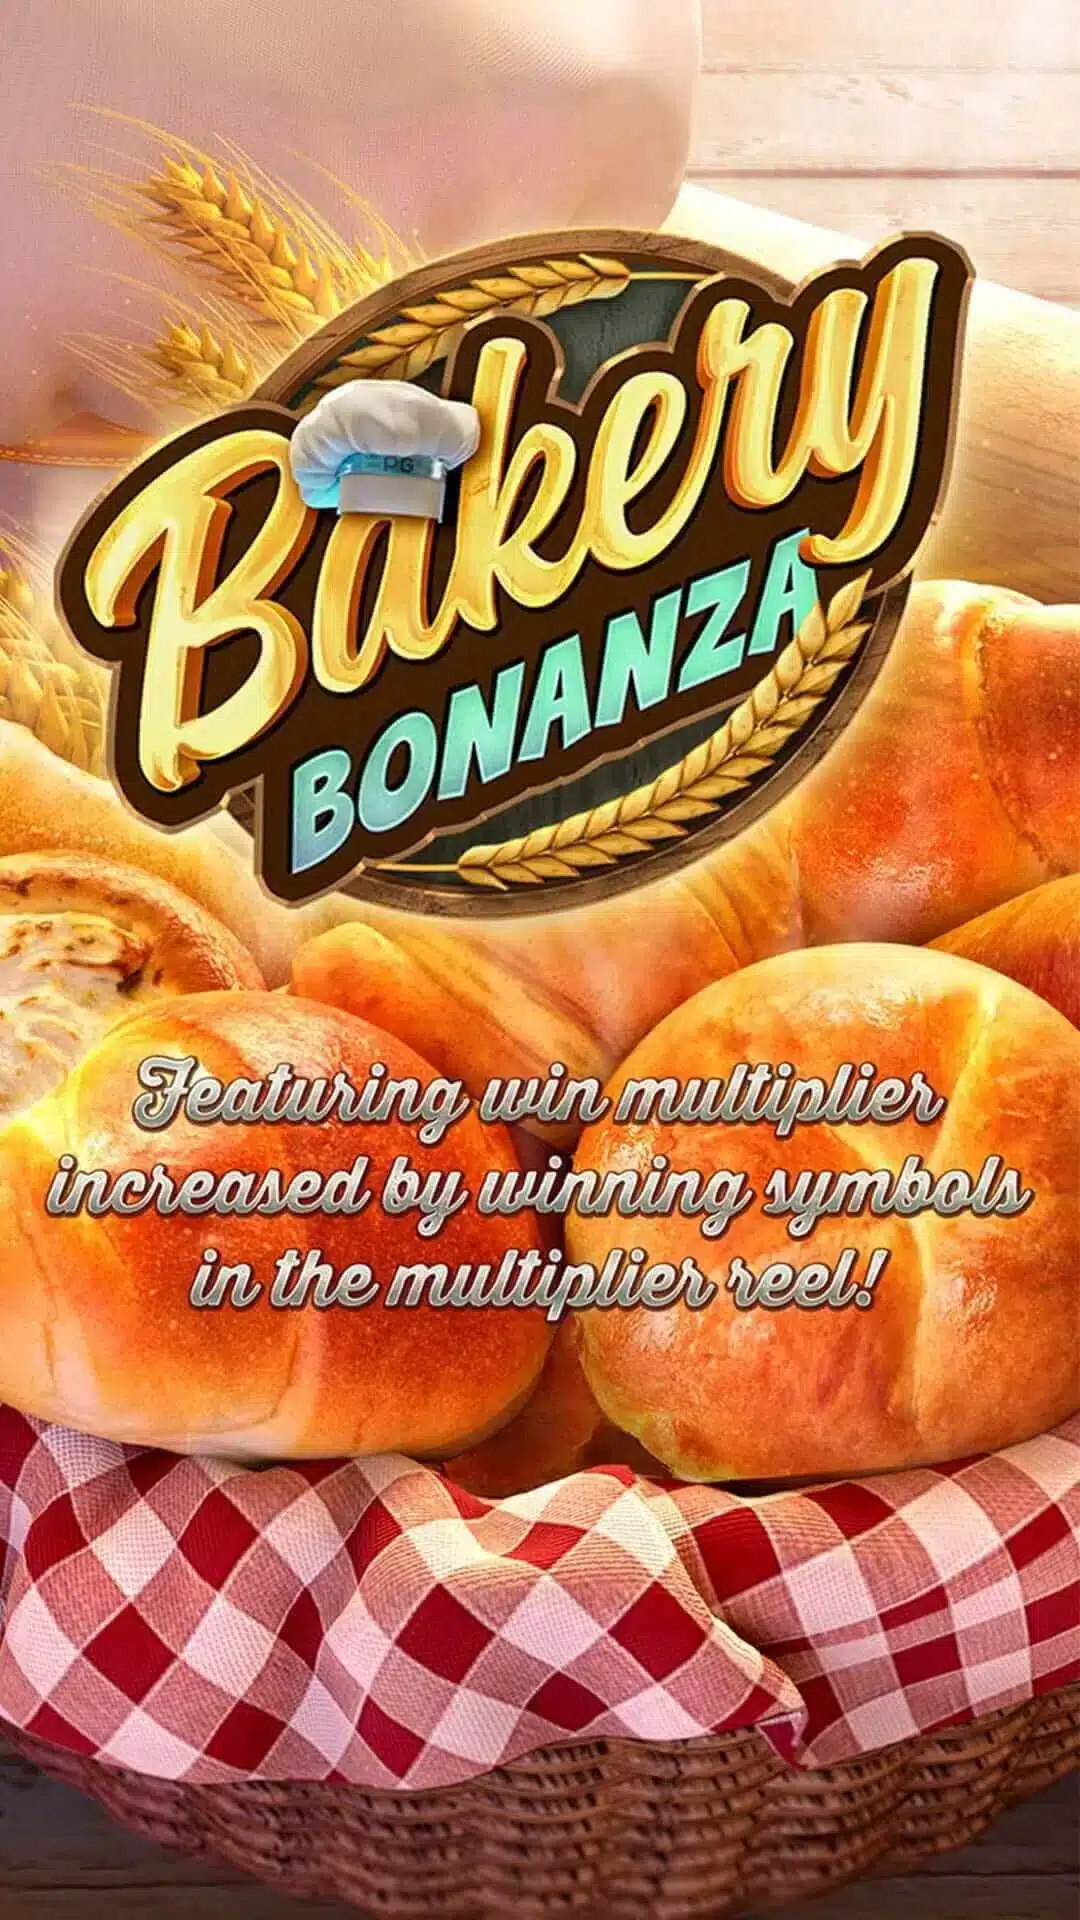 Bakery_Bonanza_SS1